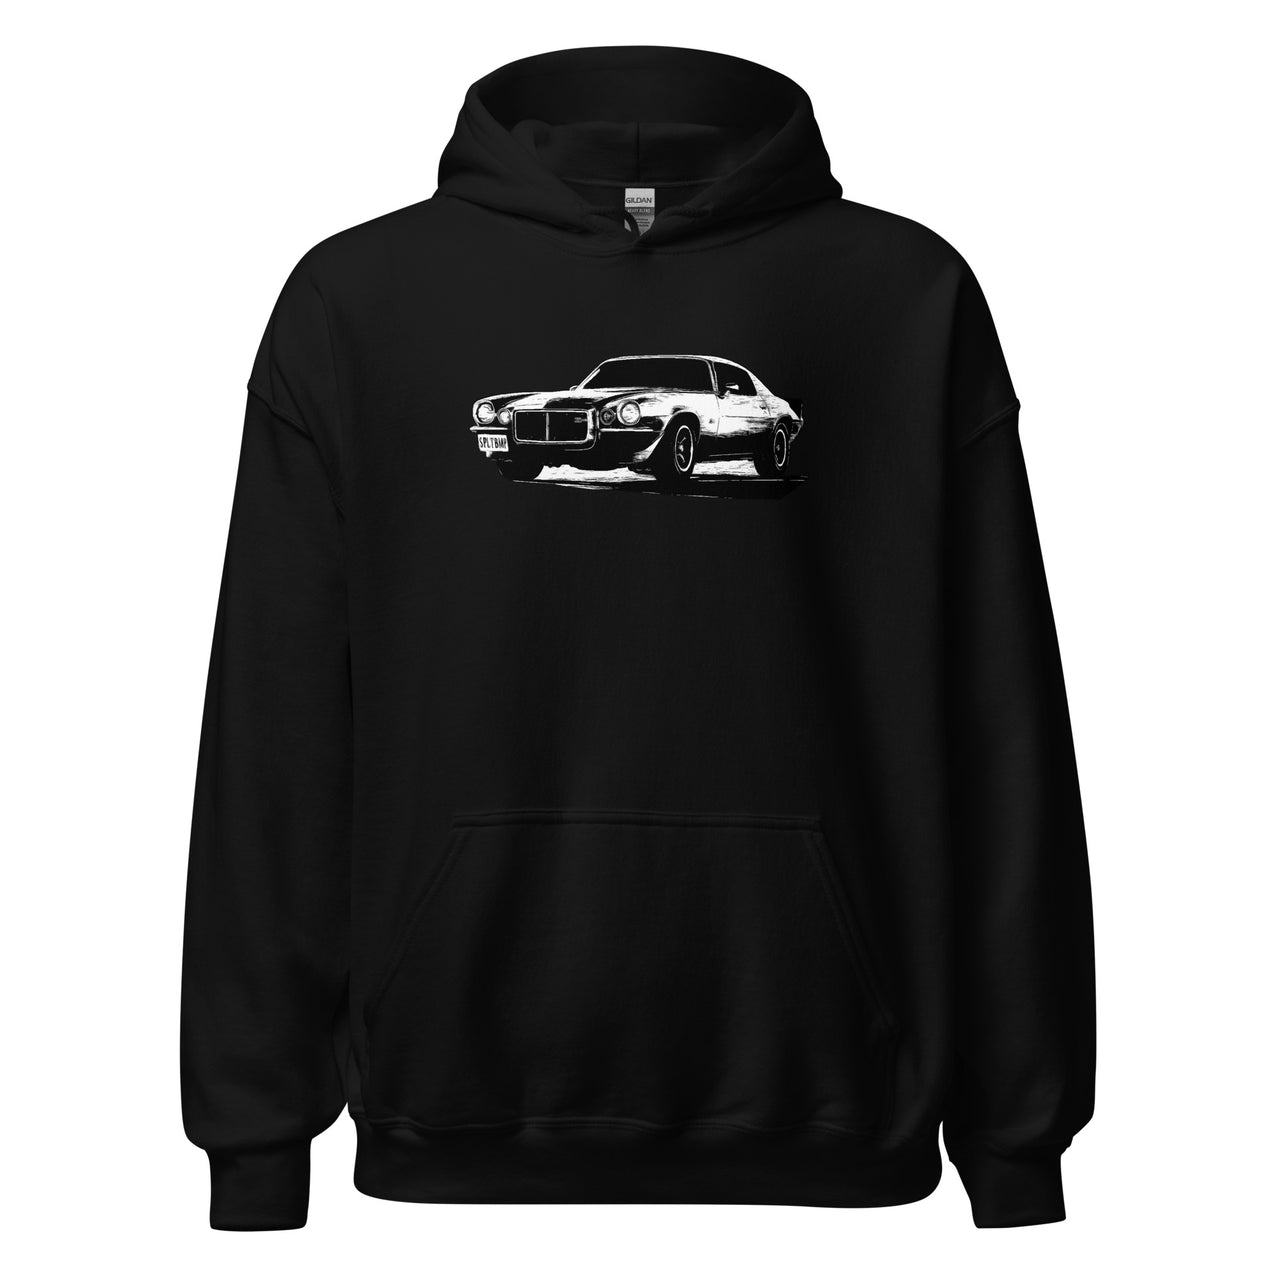 73 camaro hoodie in black